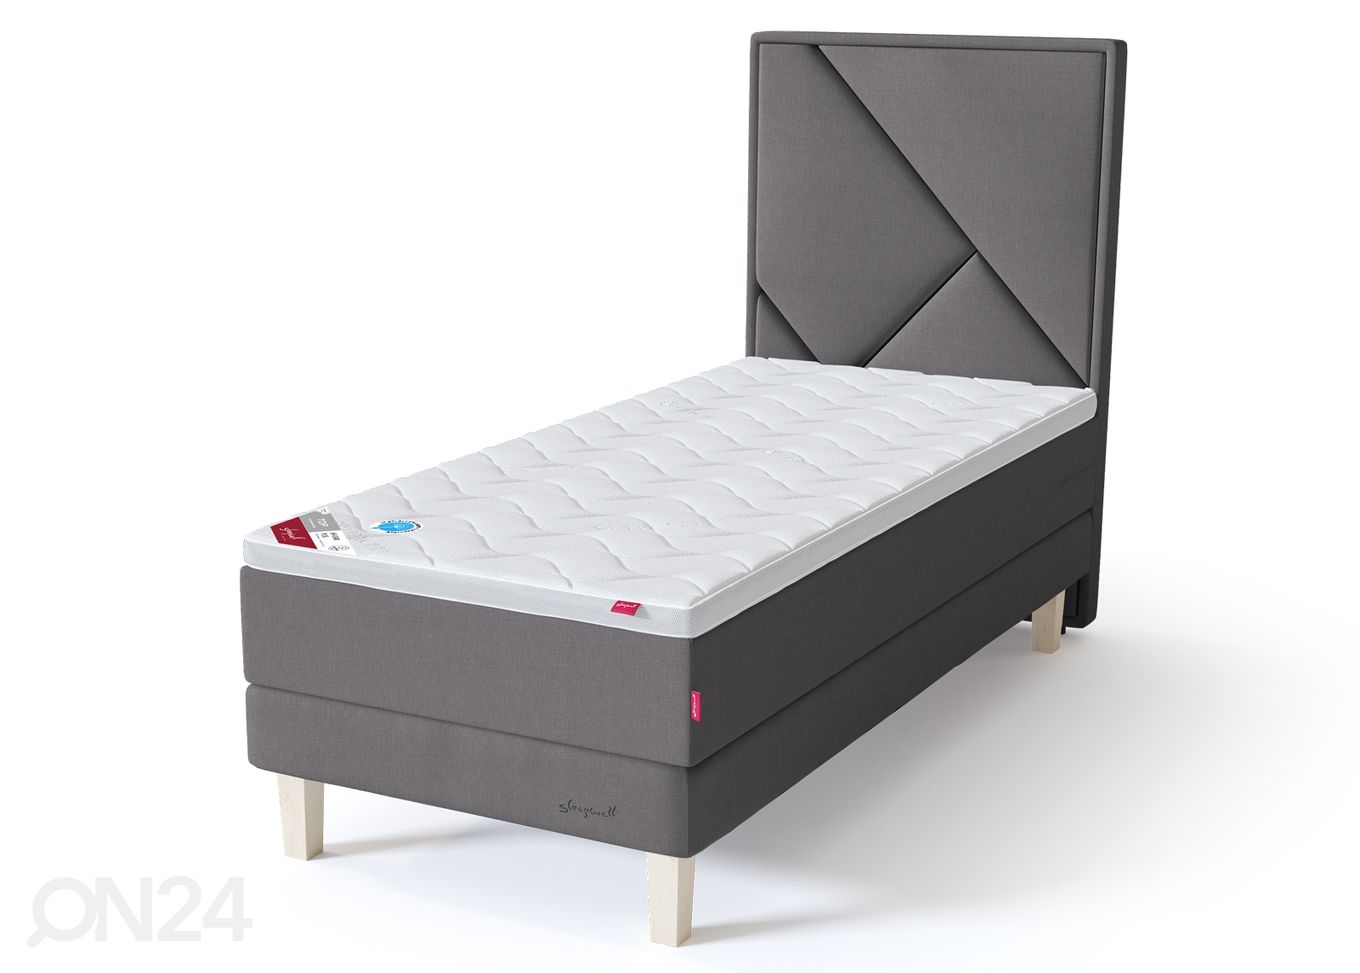 Sleepwell Red континентальная кровать на раме 80x200 cm мягкая увеличить